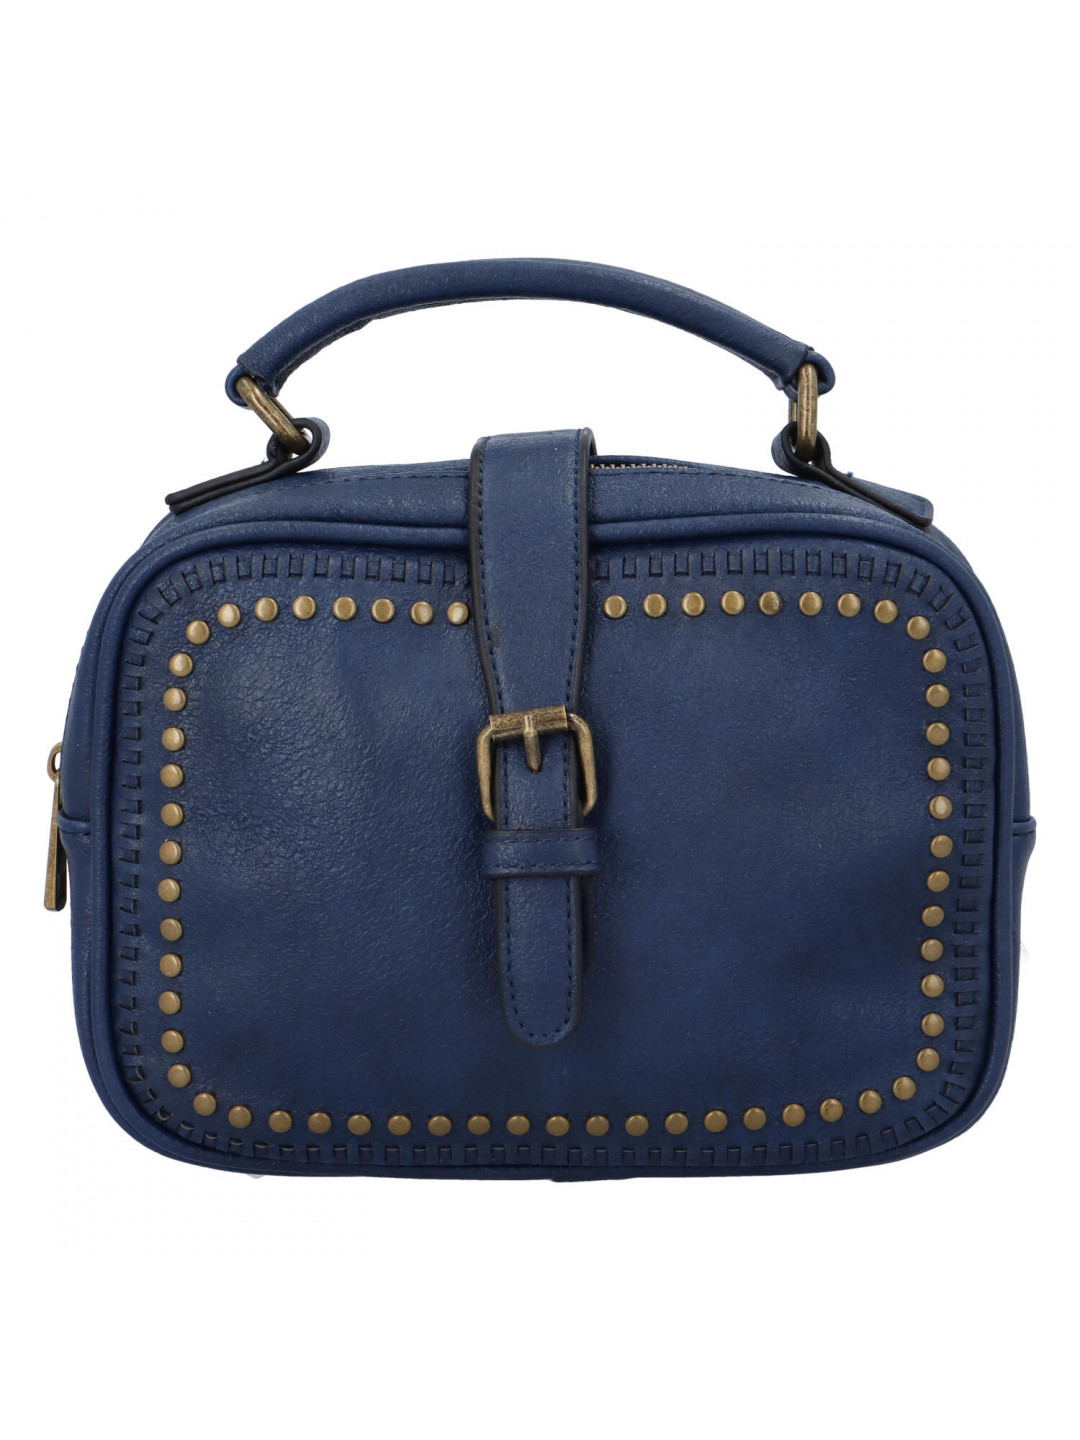 Dámská originální kabelka tmavě modrá – Paolo Bags Sami